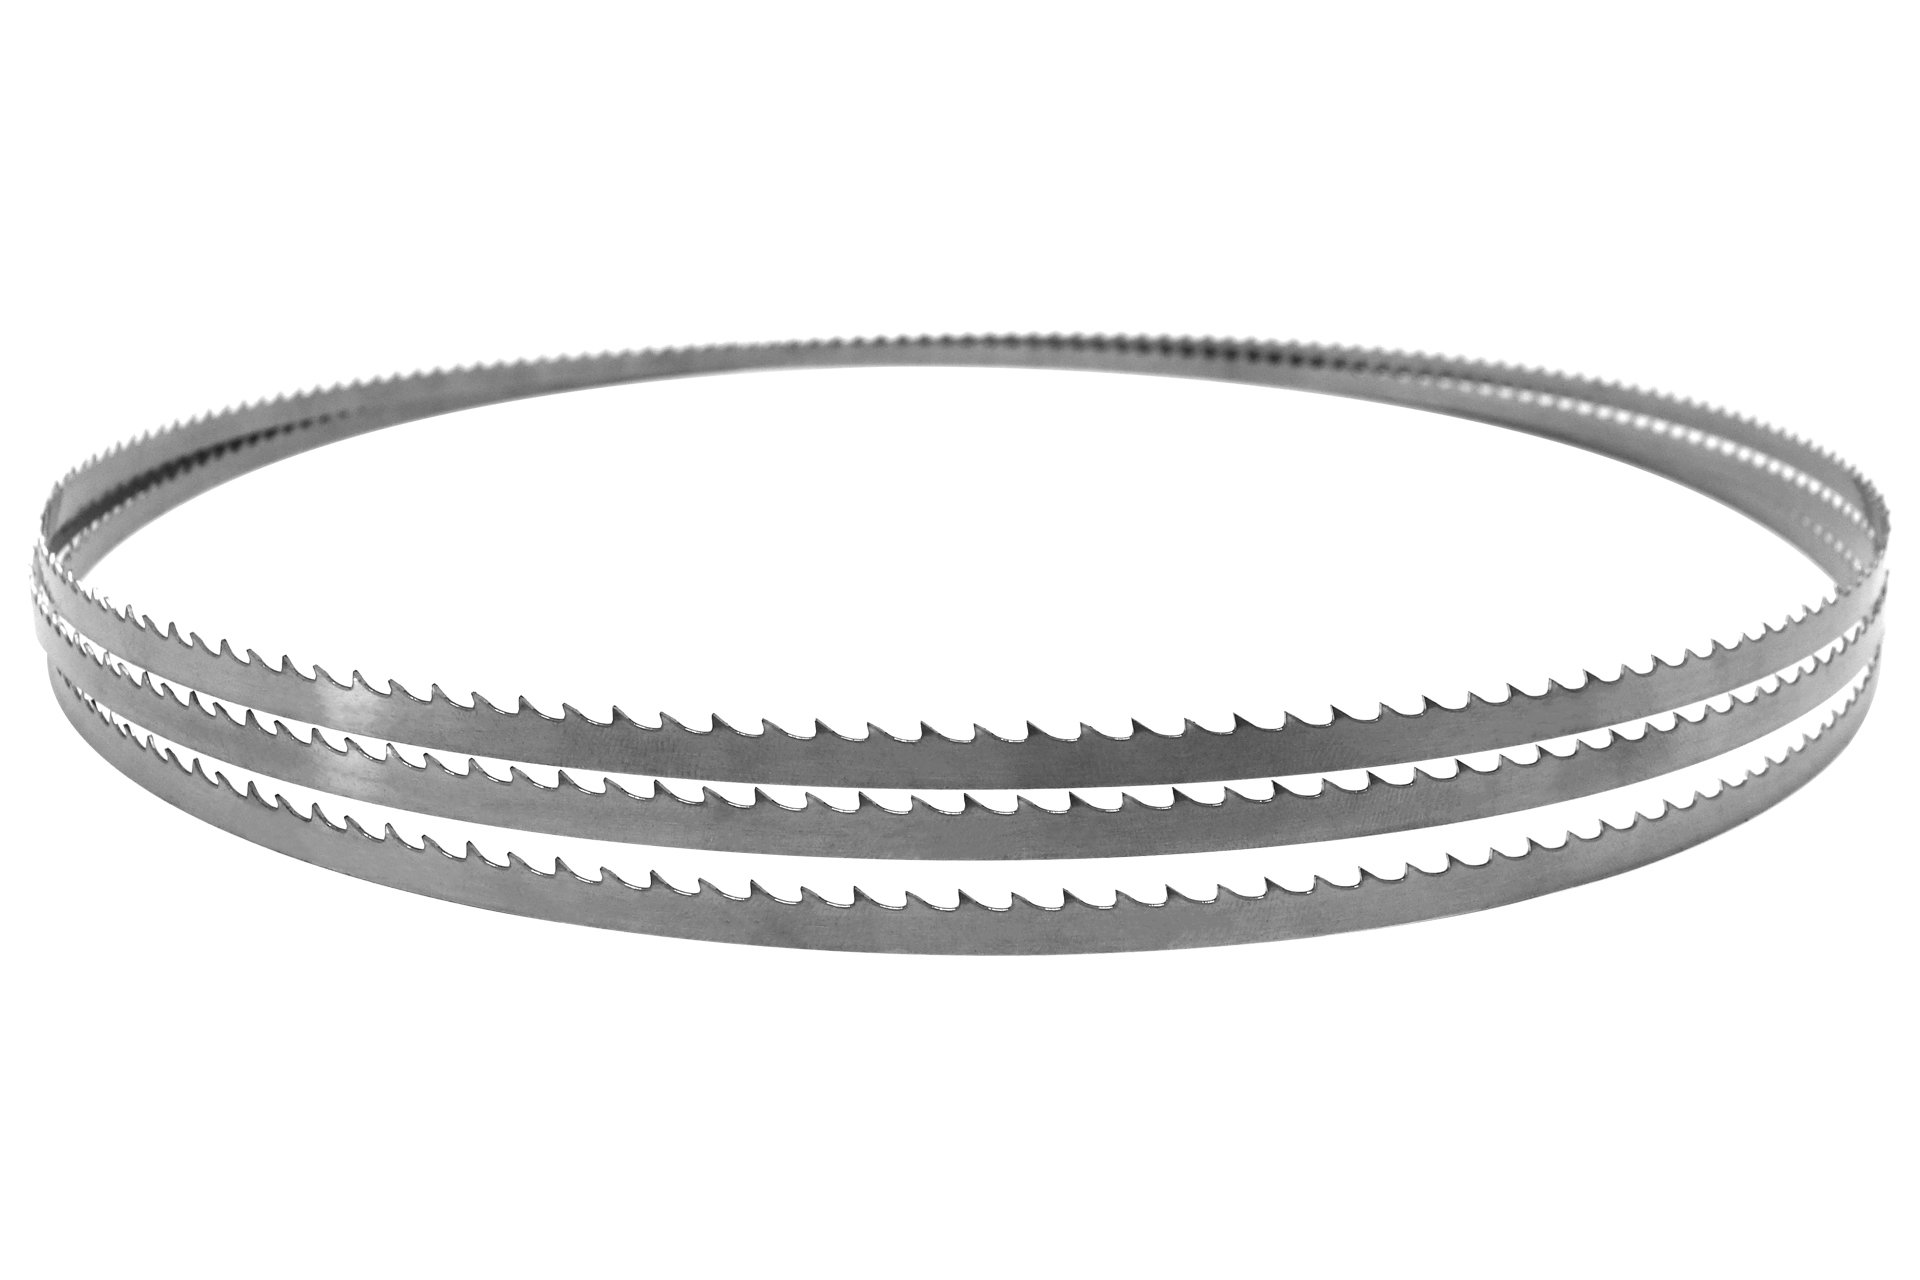 Sägeband aus Uddeholm-Stahl für MJ14, 2560 x 6 x 0,4 mm, 6 Zpz